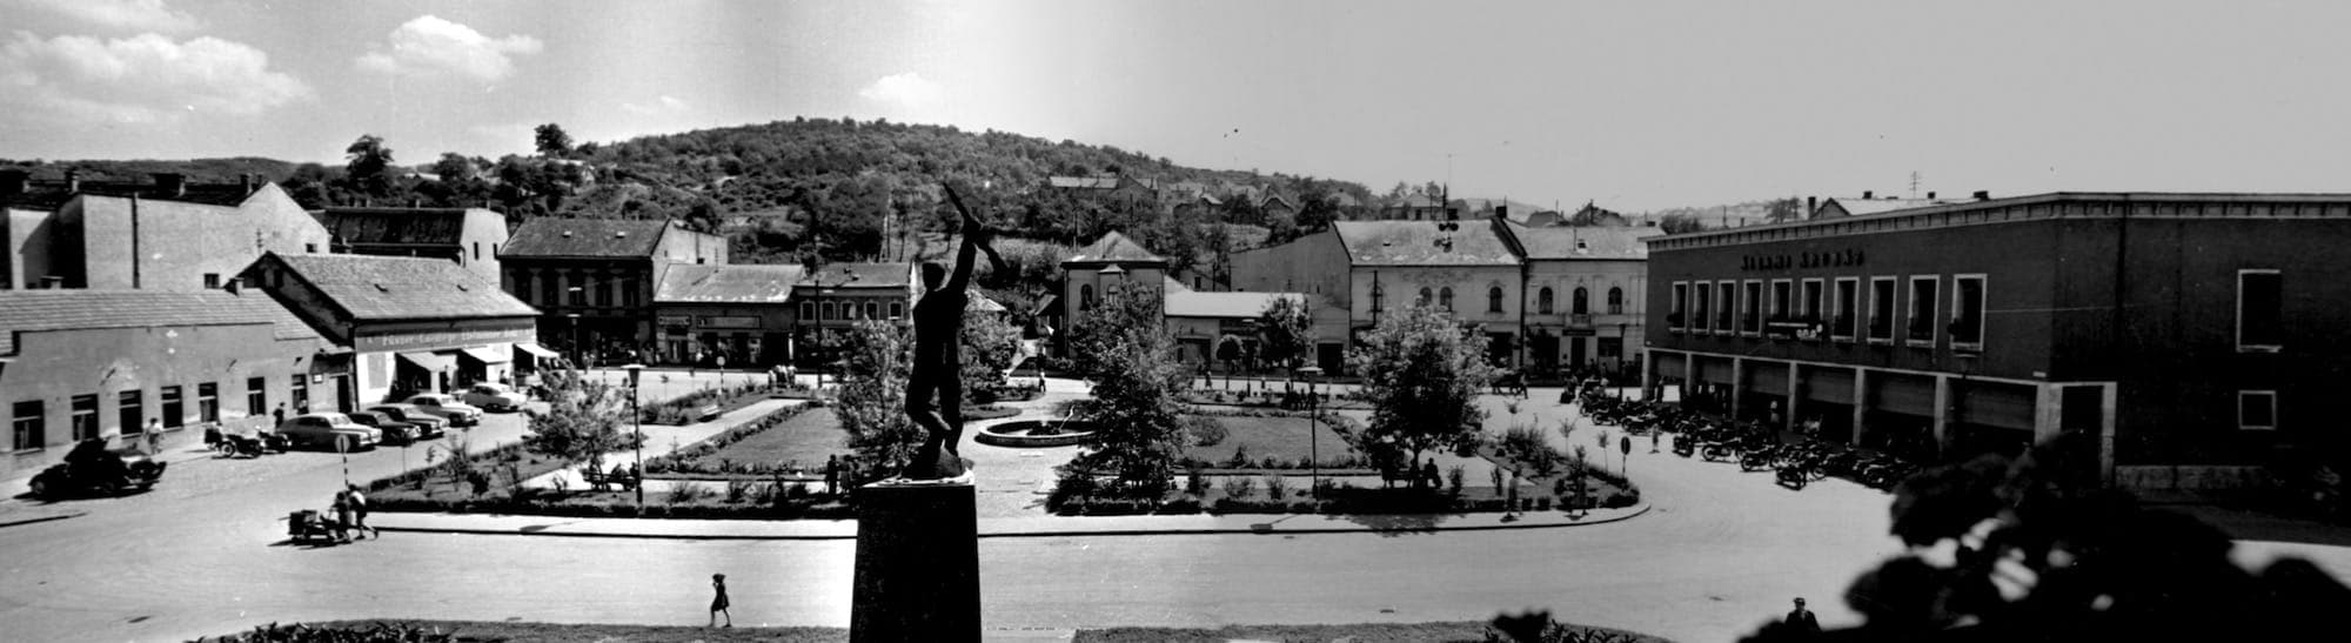 A főtér az átépítés megkezdése előtt, 1960. Forrás: Betonfalak harmóniája – a Dornyay Béla Múzeum online kiállítása
